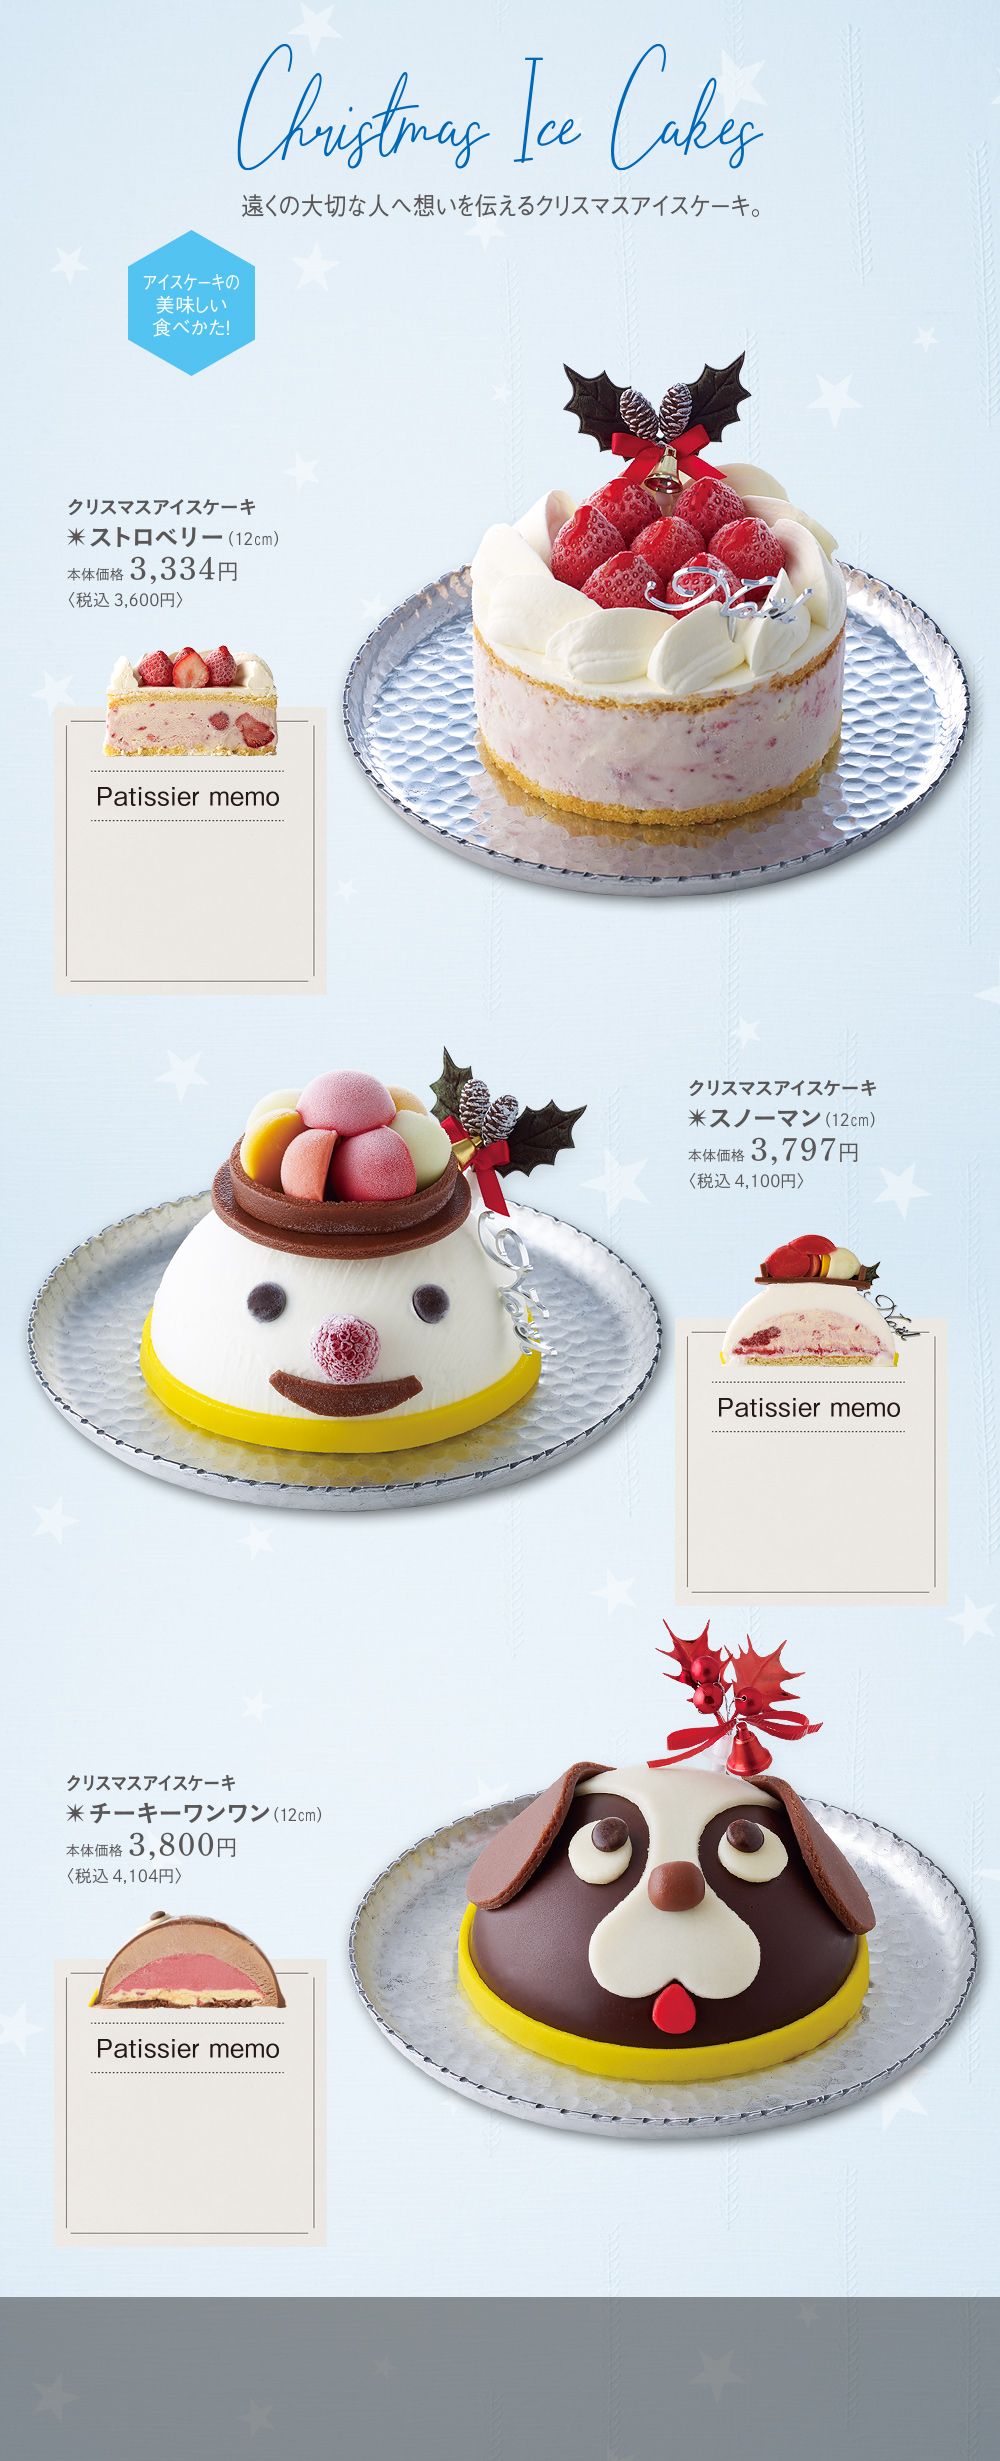 クリスマスケーキ 浜松のお菓子処 春華堂